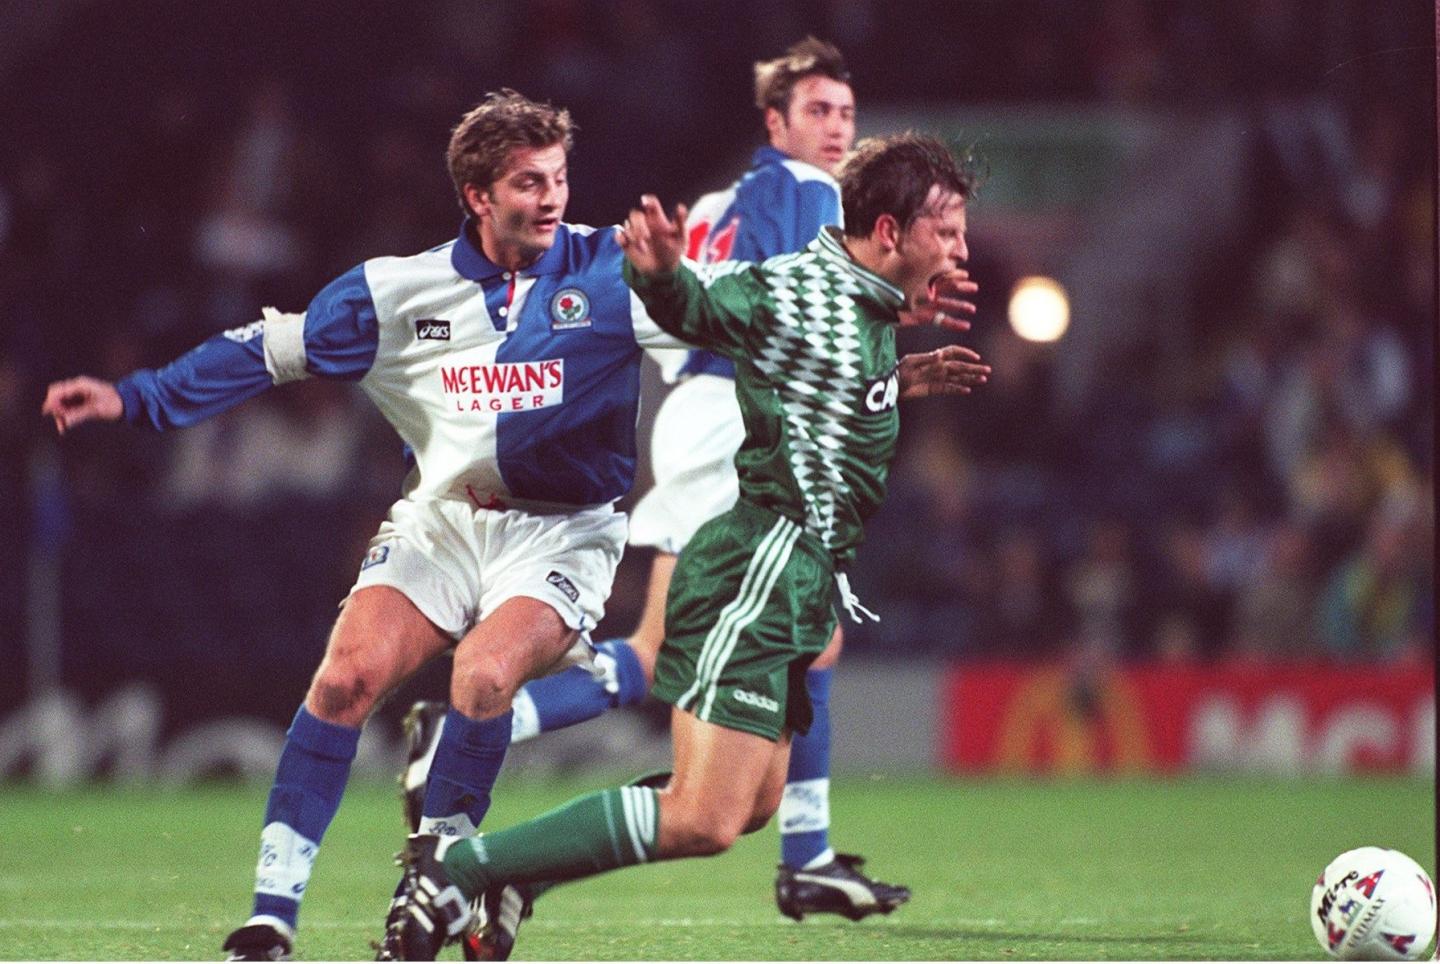 Tim Sherwood nieprzepisowo powstrzymuje Marcina Jałochę. Mecz Ligi Mistrzów Blackburn - Legia z 1 listopada 1995 roku.